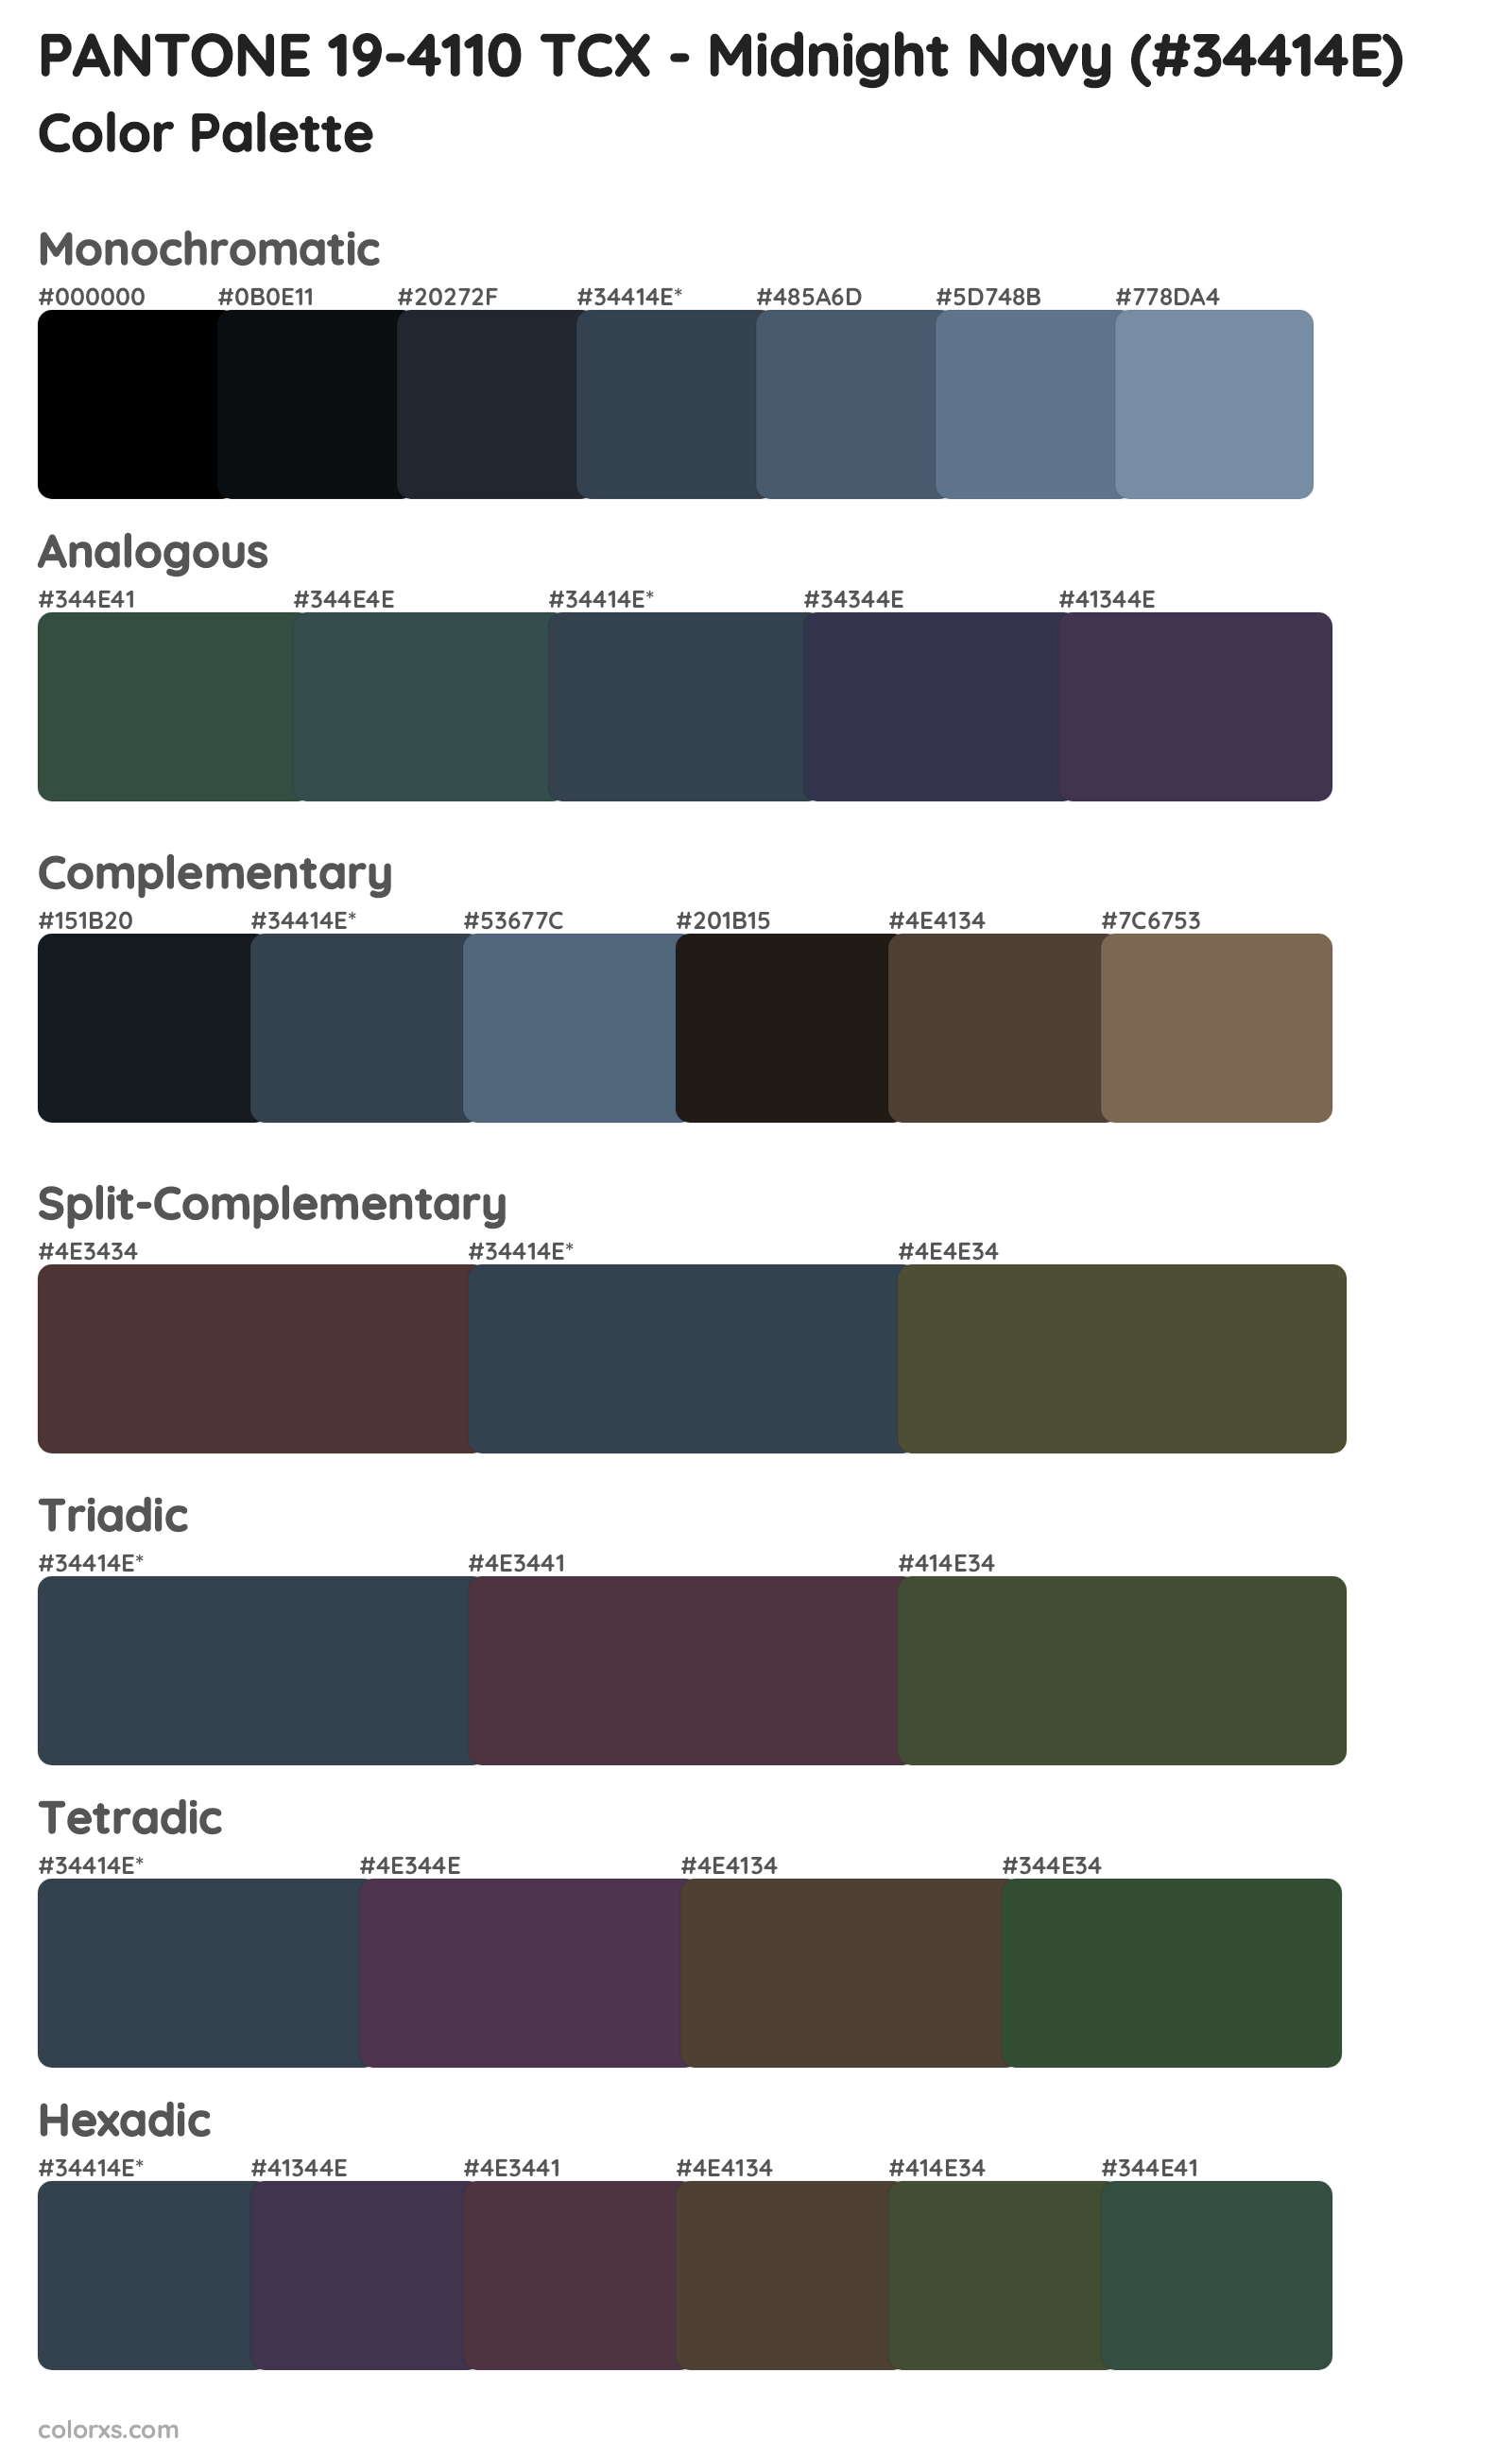 PANTONE 19-4110 TCX - Midnight Navy Color Scheme Palettes